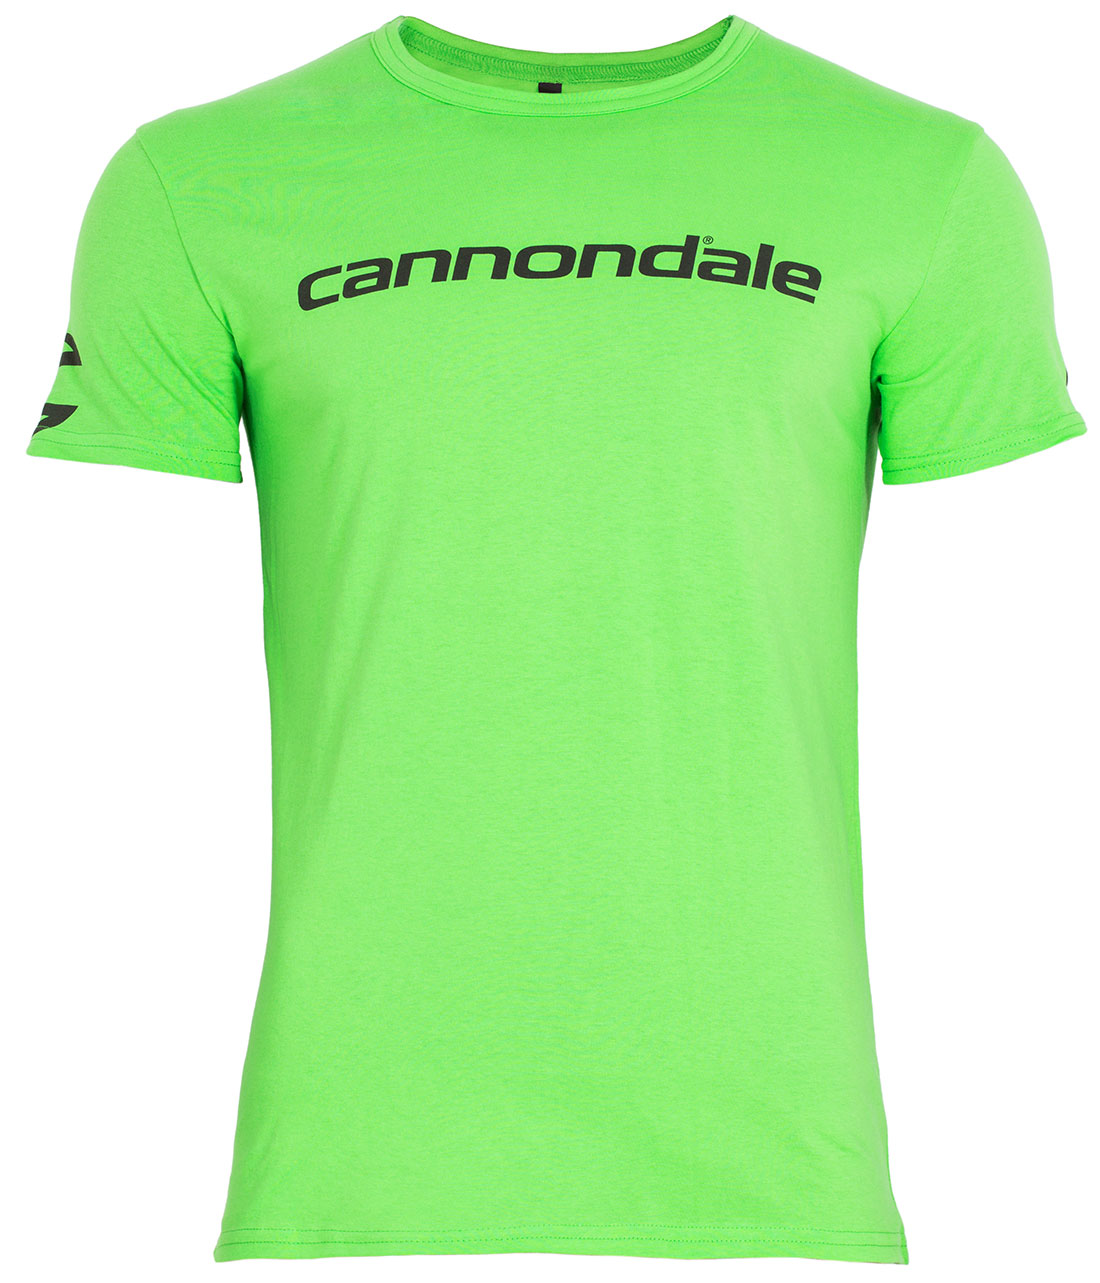 Футболка Cannondale с черным горизонтальным логотипом, зелёная, размер M